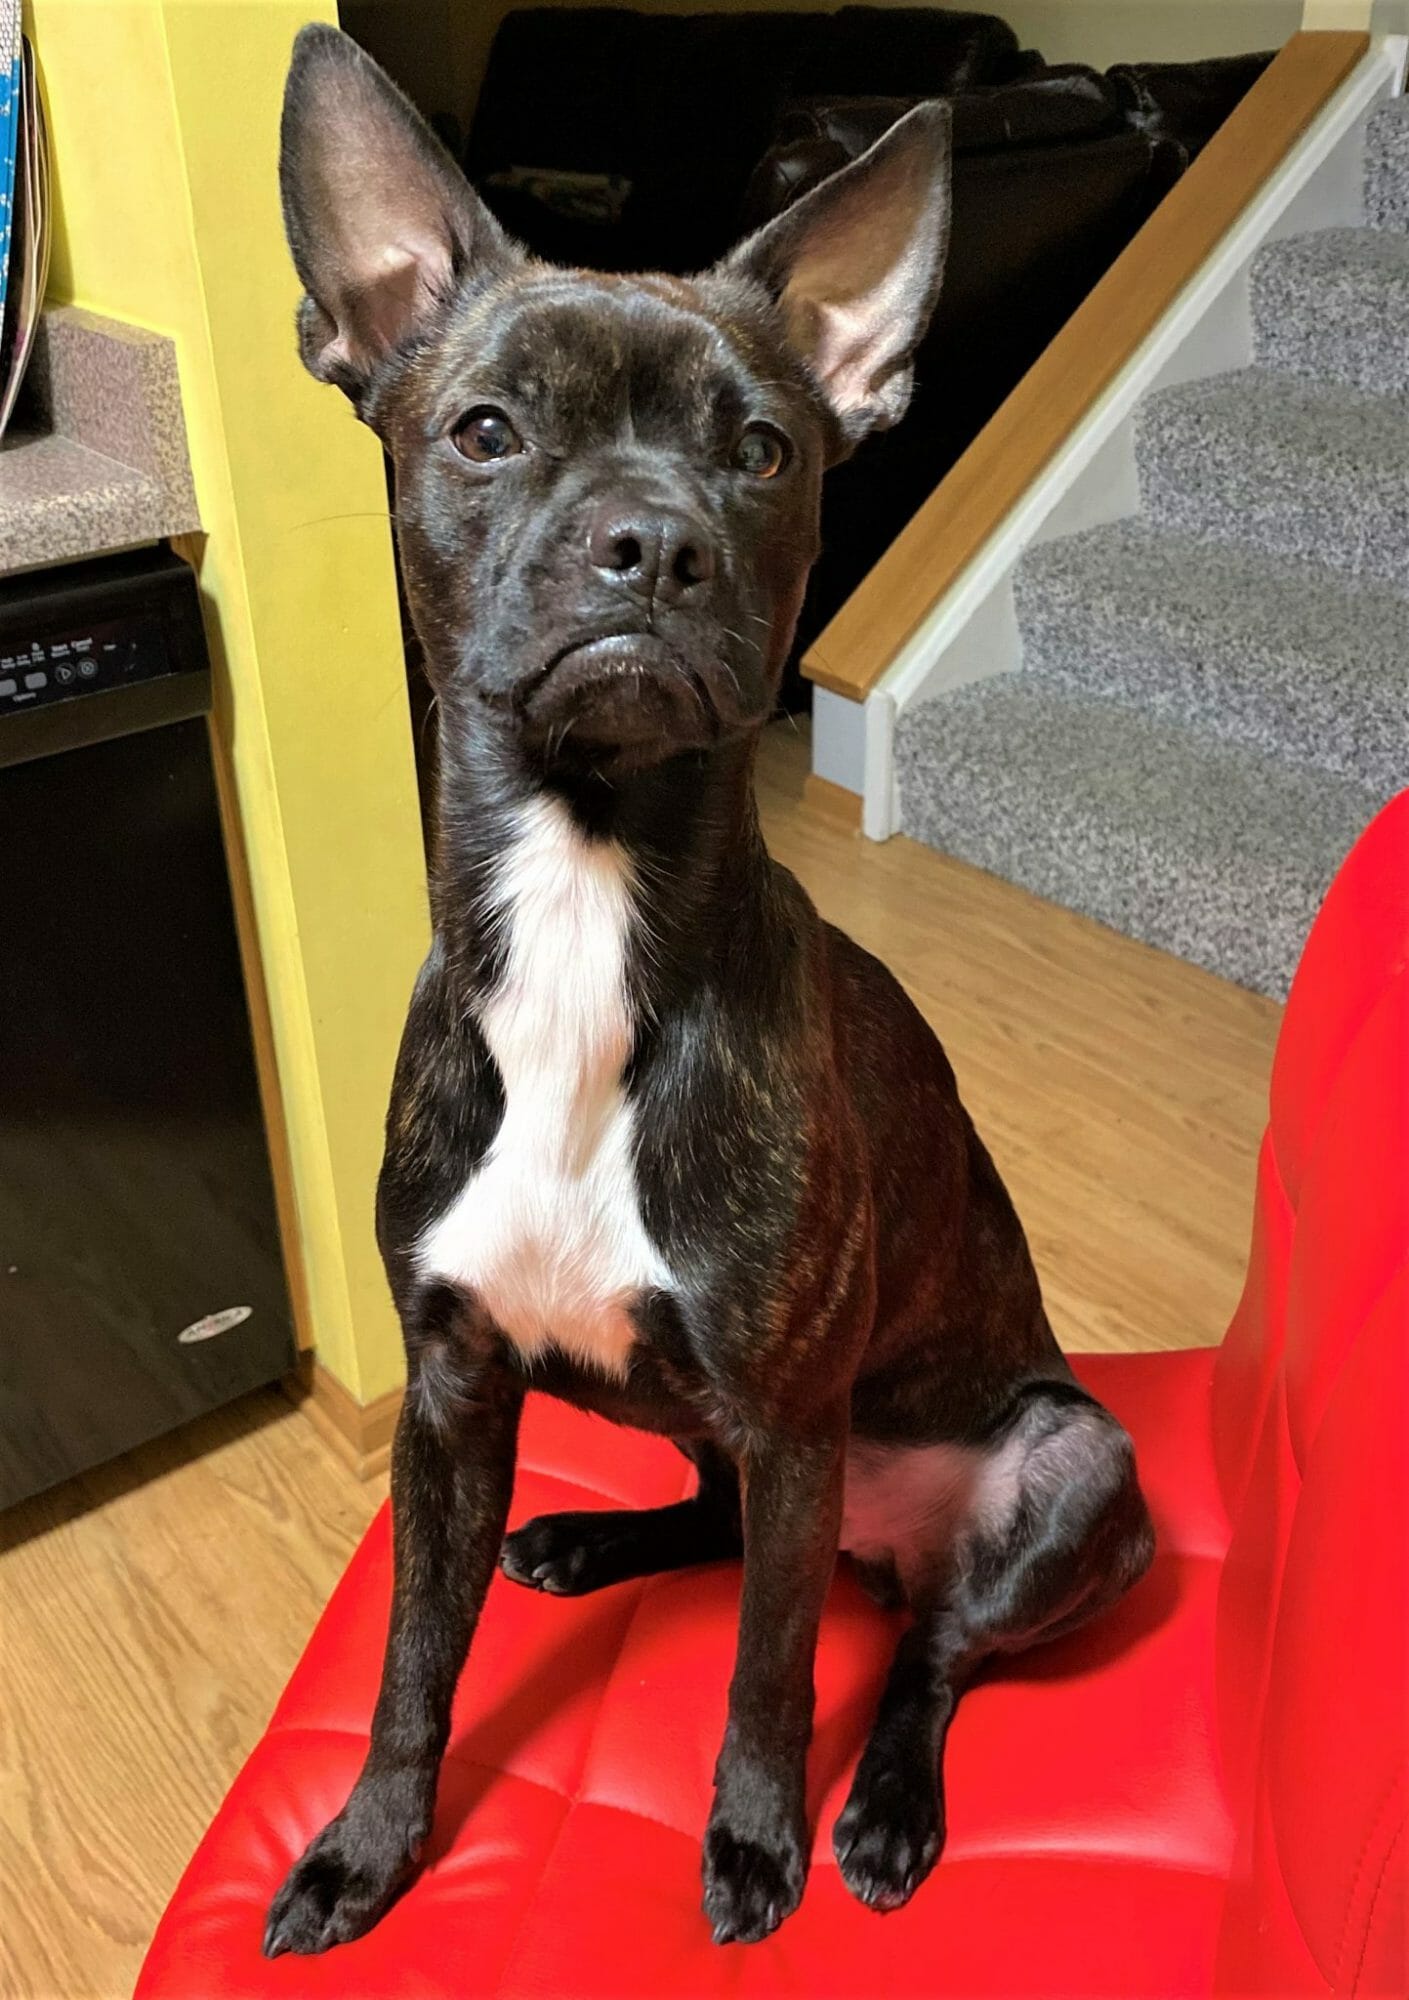 cute dog photo contest winner batman chihuahua boston terrier mix august 2021